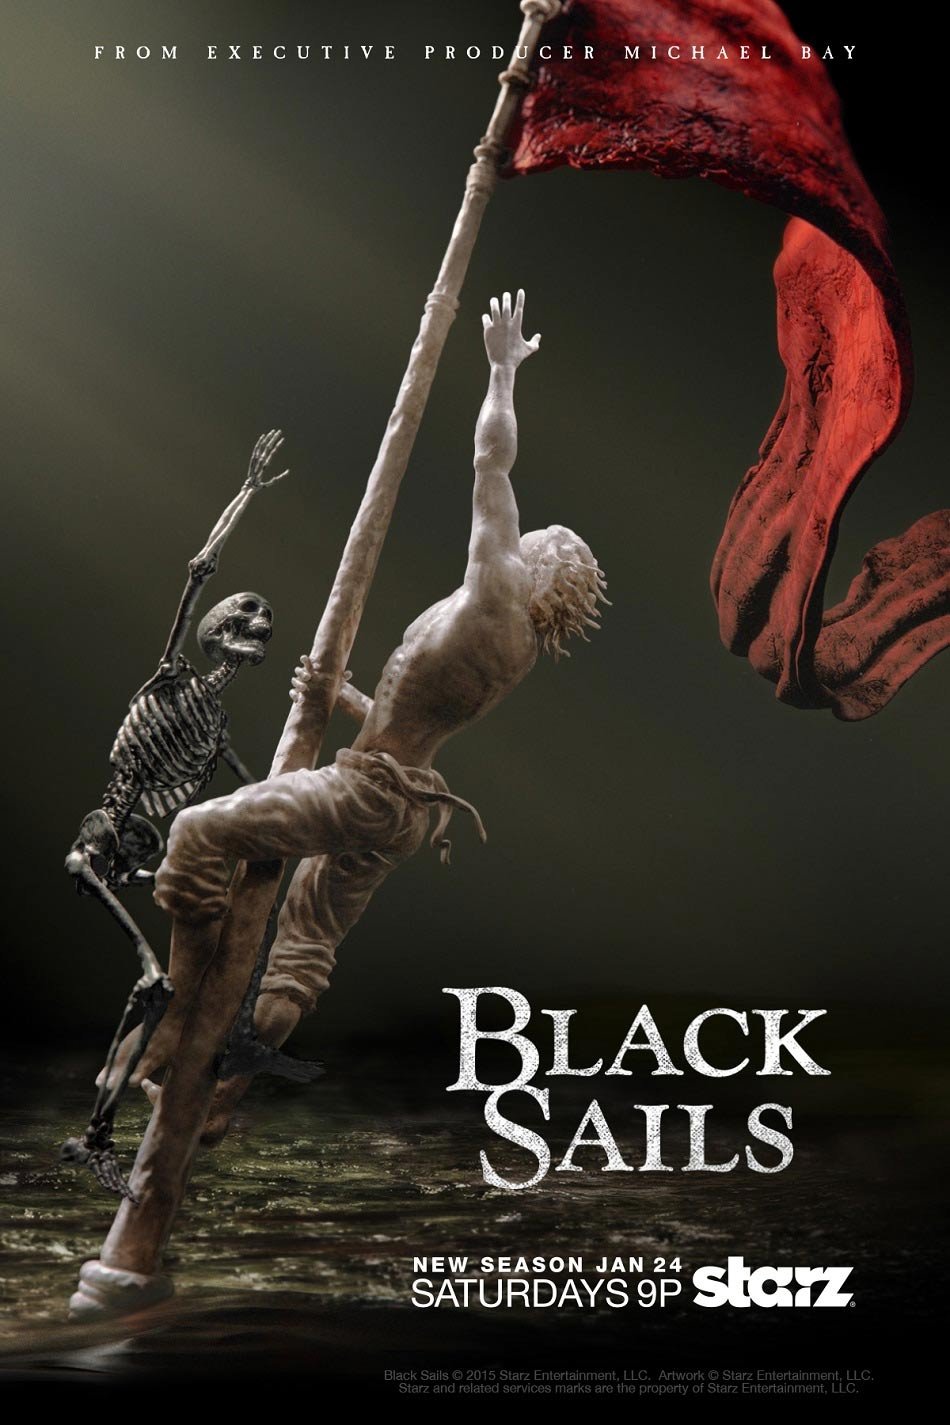 Black Sails - Saison 2